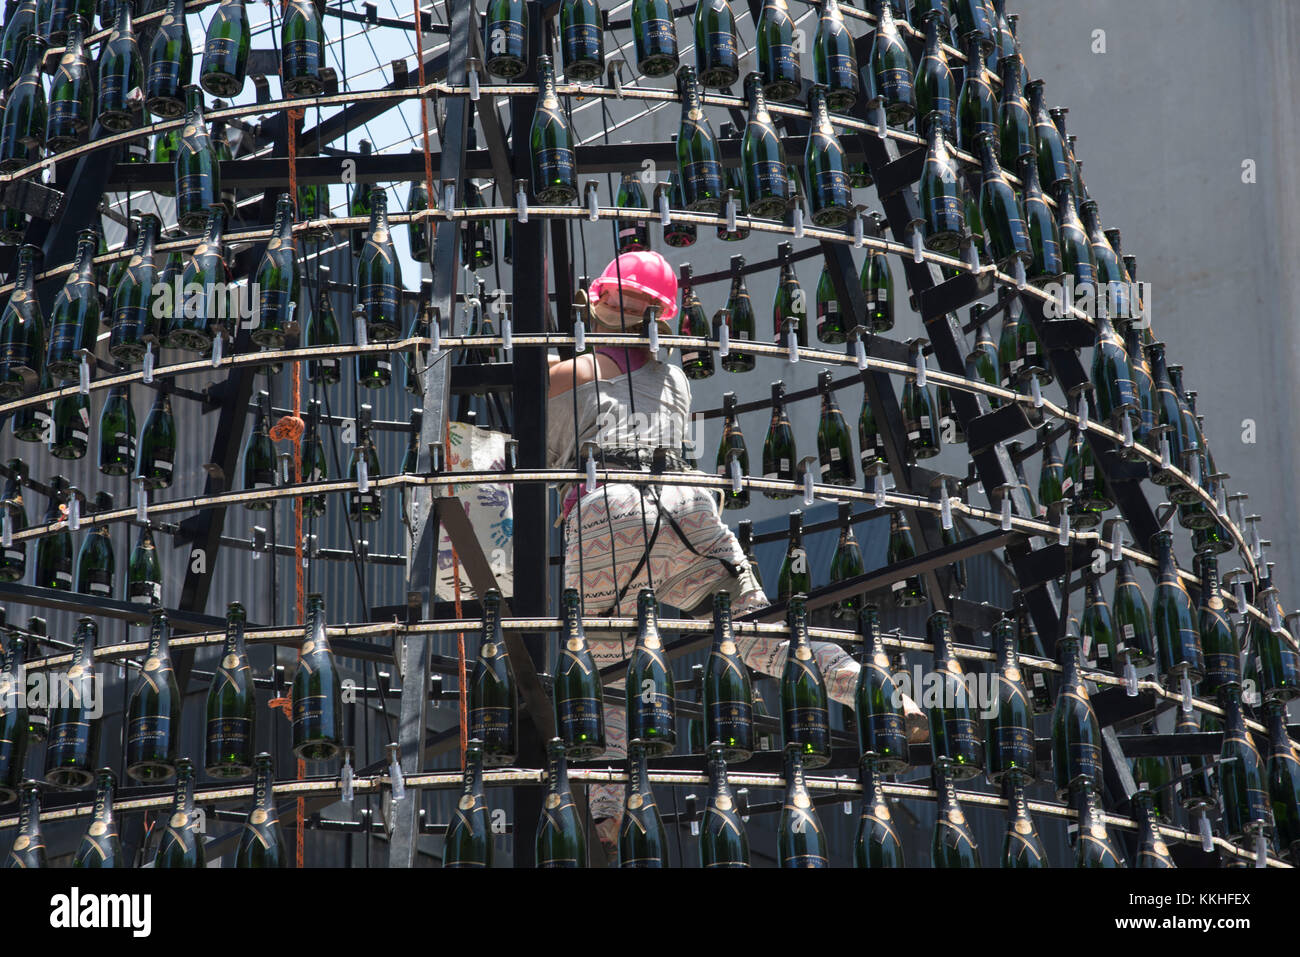 Kapstadt, Südafrika. 1.. Dezember 2017. Eine Frau mit Sicherheitsgeschirr und pinkem Hut, die an der V&A Waterfront in Kapstadt, Südafrika, einen Weihnachtsbaum aus beleuchteten Moet Chandon Champagnerflaschen baut. Stockfoto